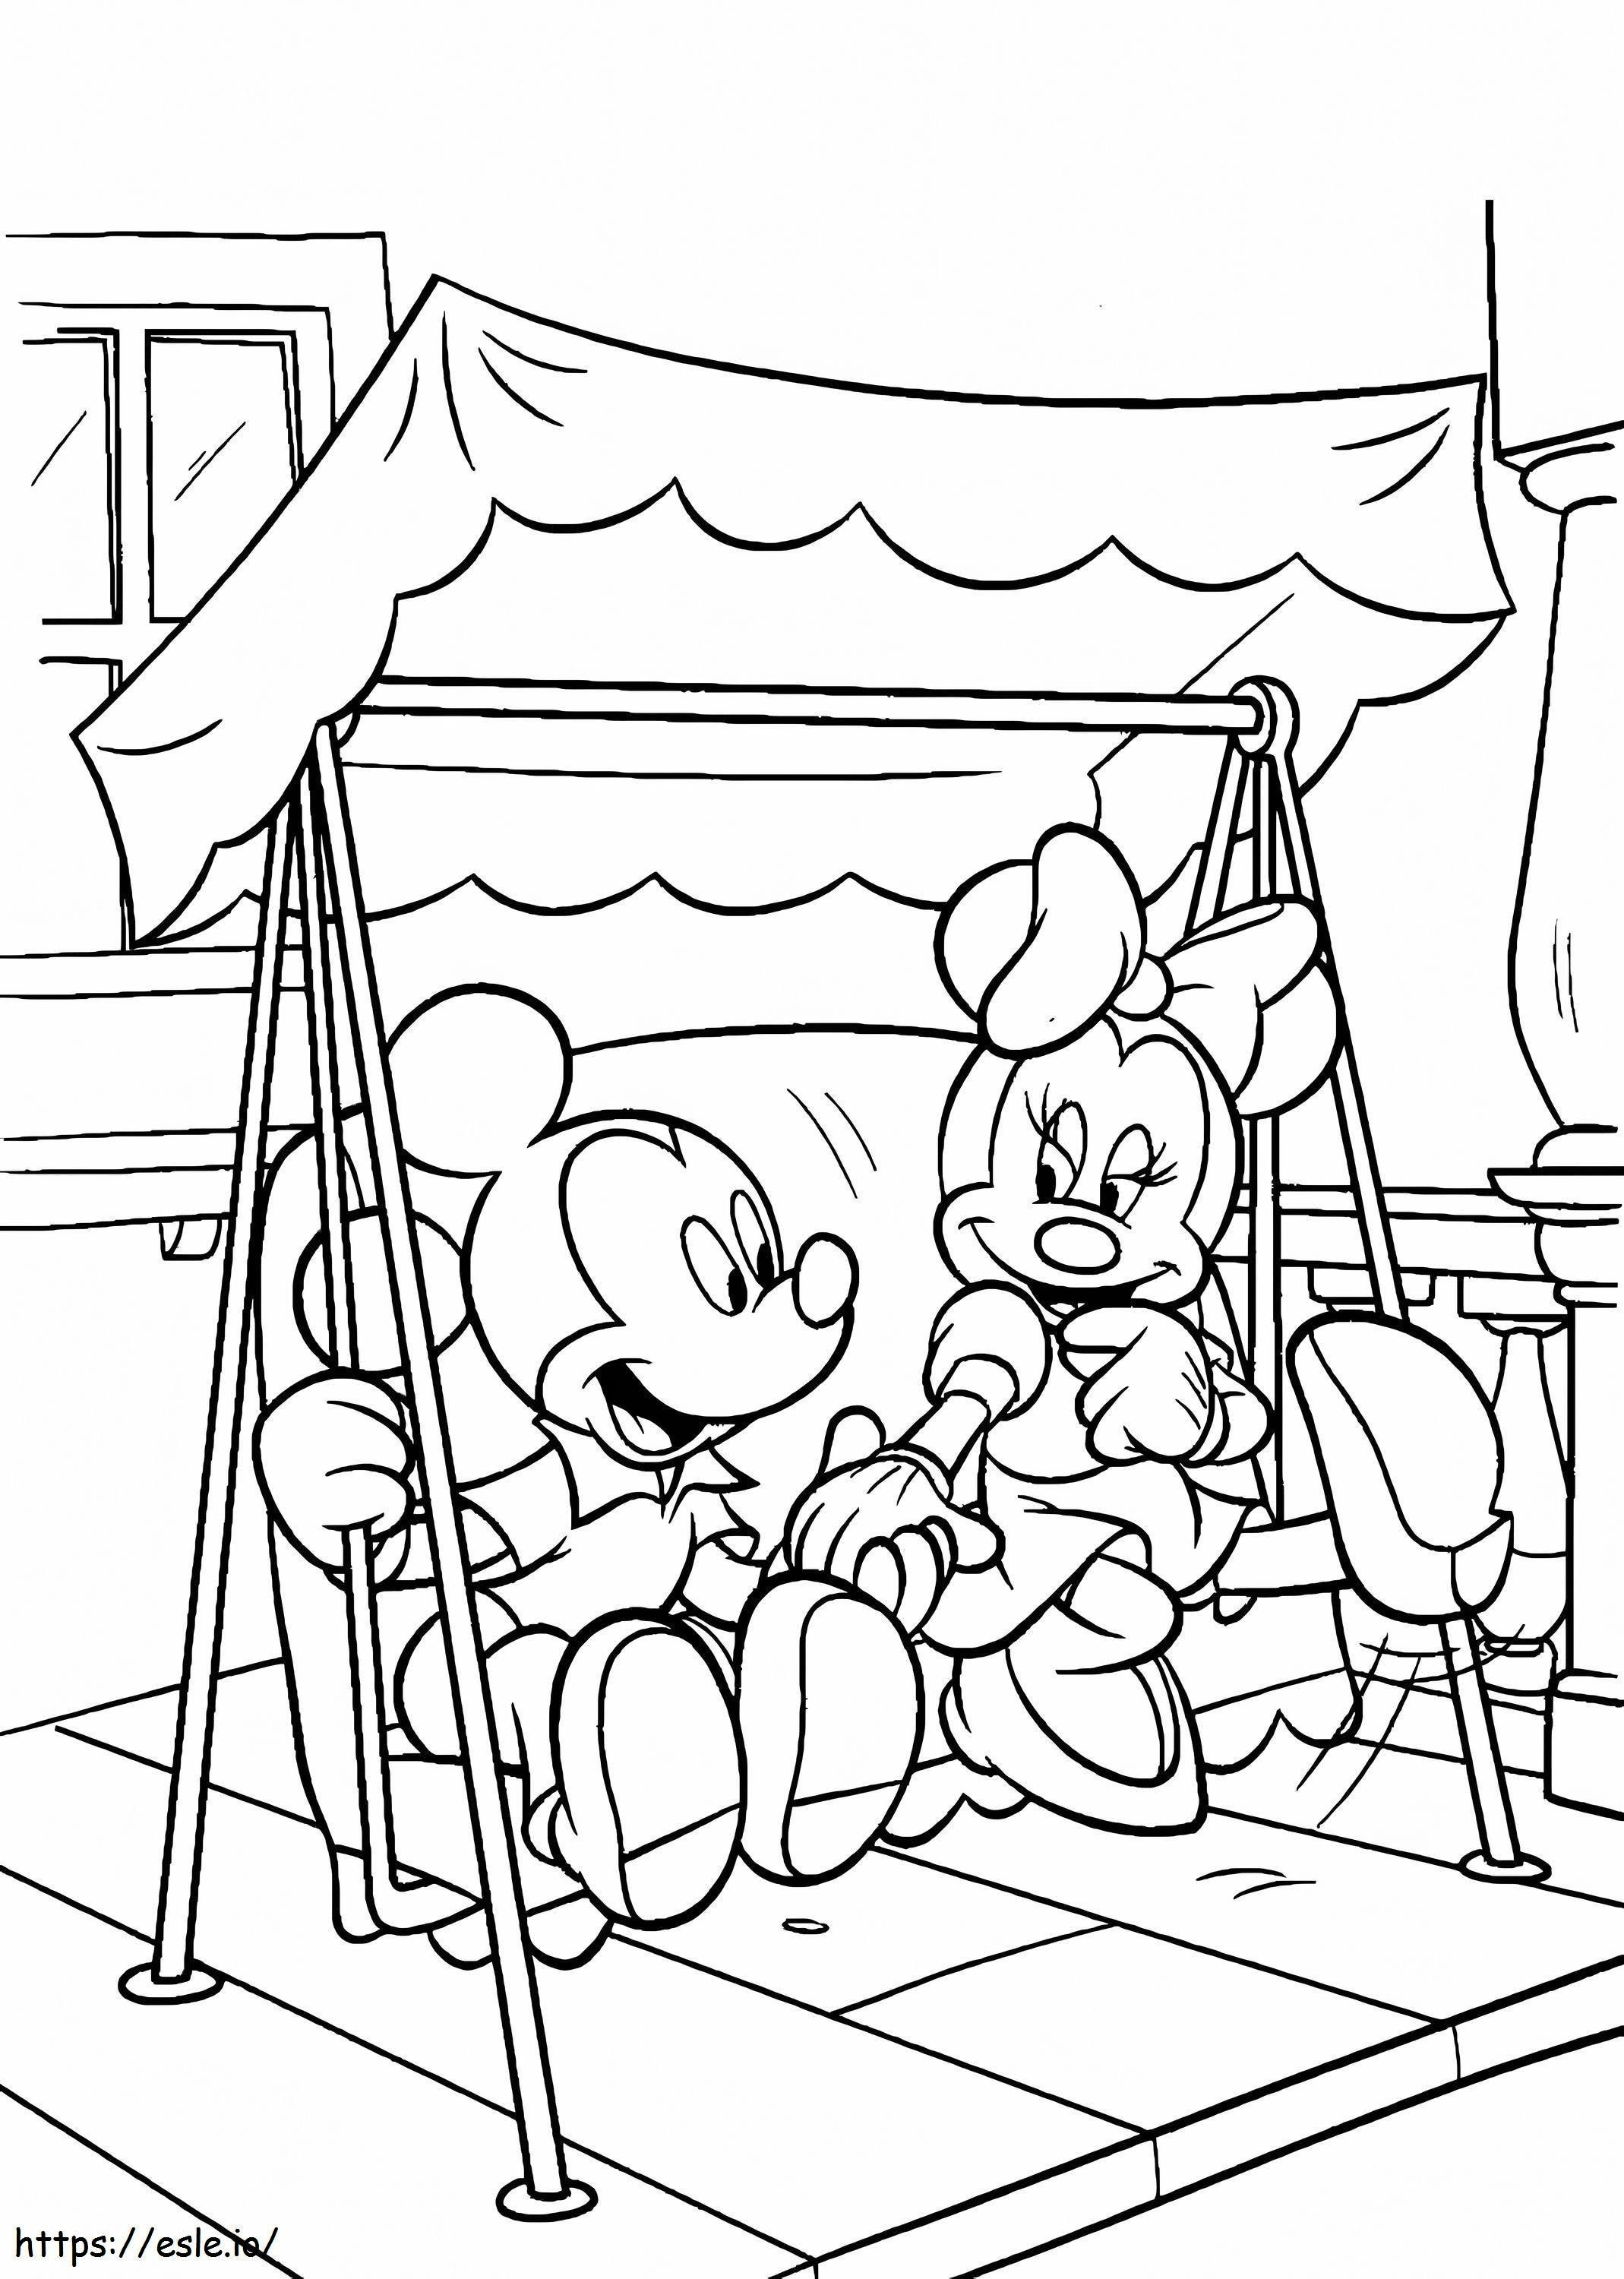 Mickey și Minnie Mouse se joacă pe leagăne de colorat